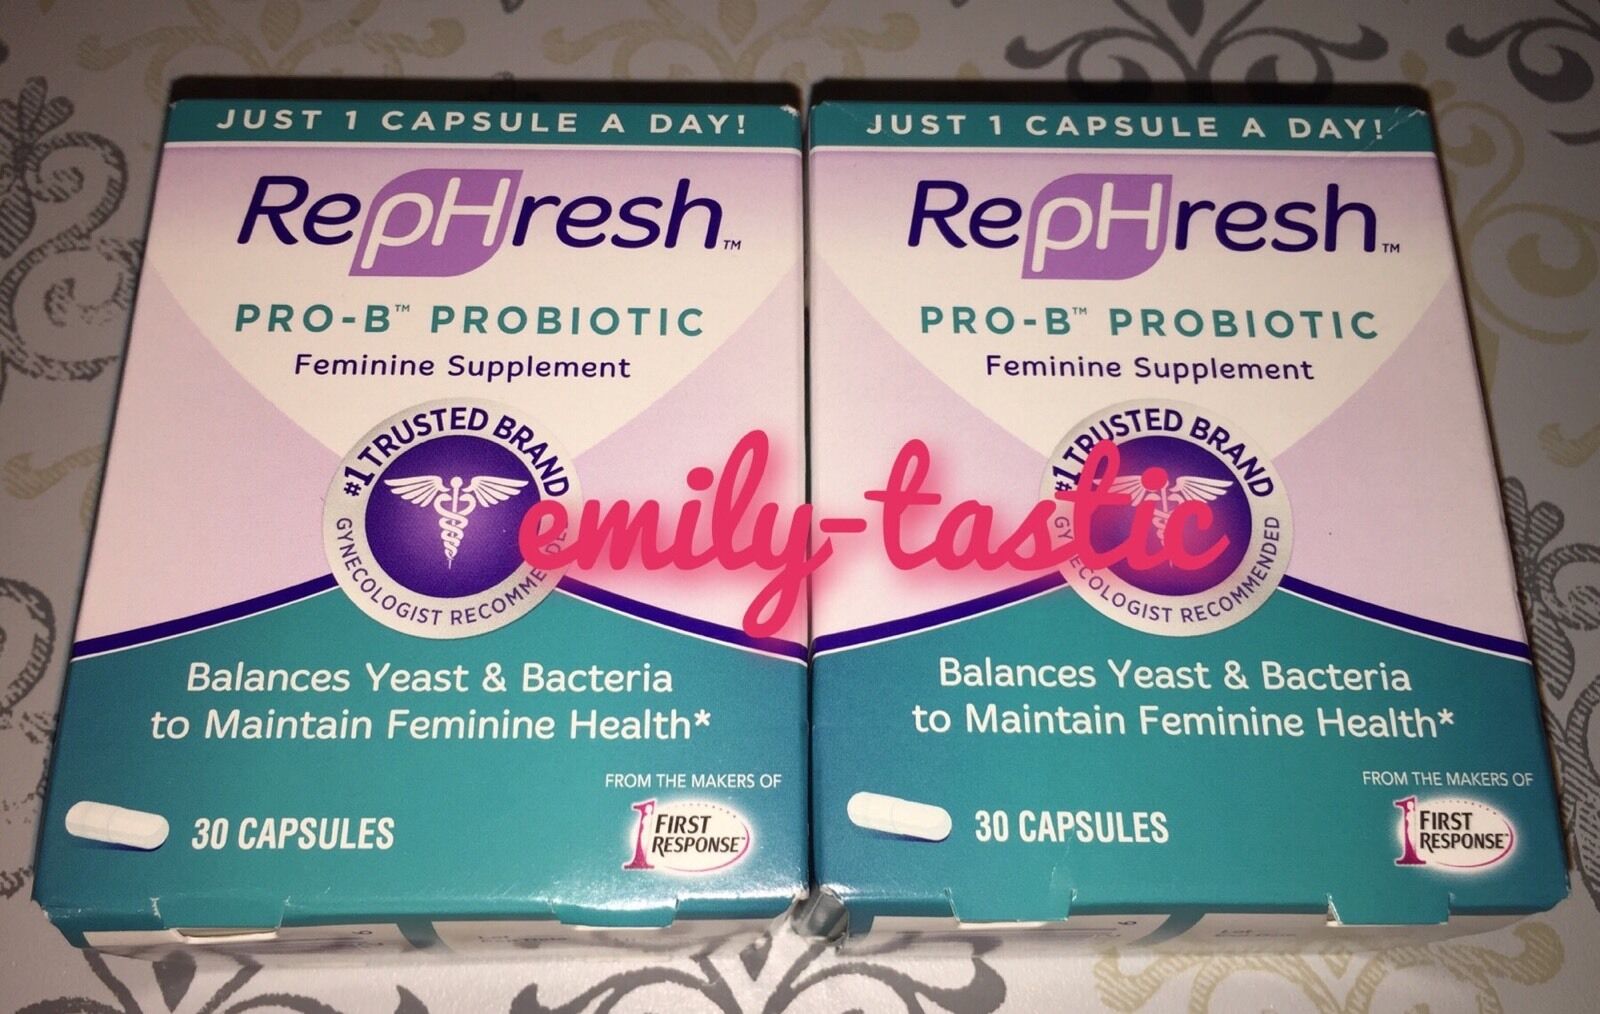 Rephresh Pro-b Probiotic Feminine Supplement 2 Boxes Of 30 = 60 Capsule Jan 2022